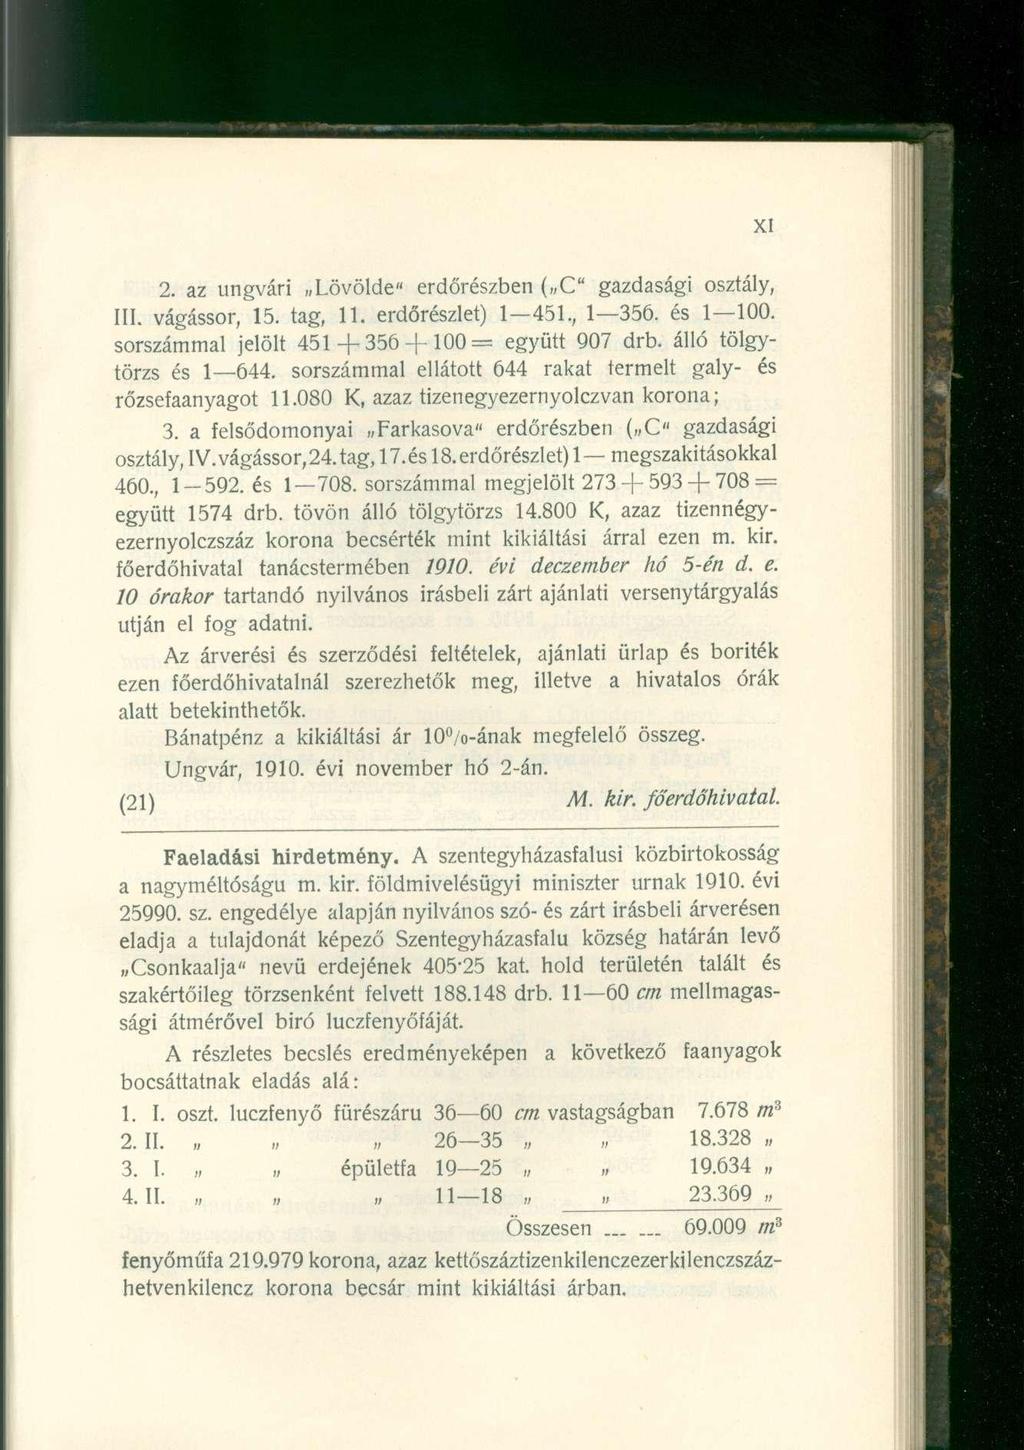 2. SLZ ungvári n Lövölde" erdőrészben ( C" gazdasági osztály, III. vágássor, 15. tag, 11. erdőrészlet) 1 451., 1 356. és 1 100. sorszámmal jelölt 451 + 3 5 6 + 1 0 0 = együtt 907 drb.